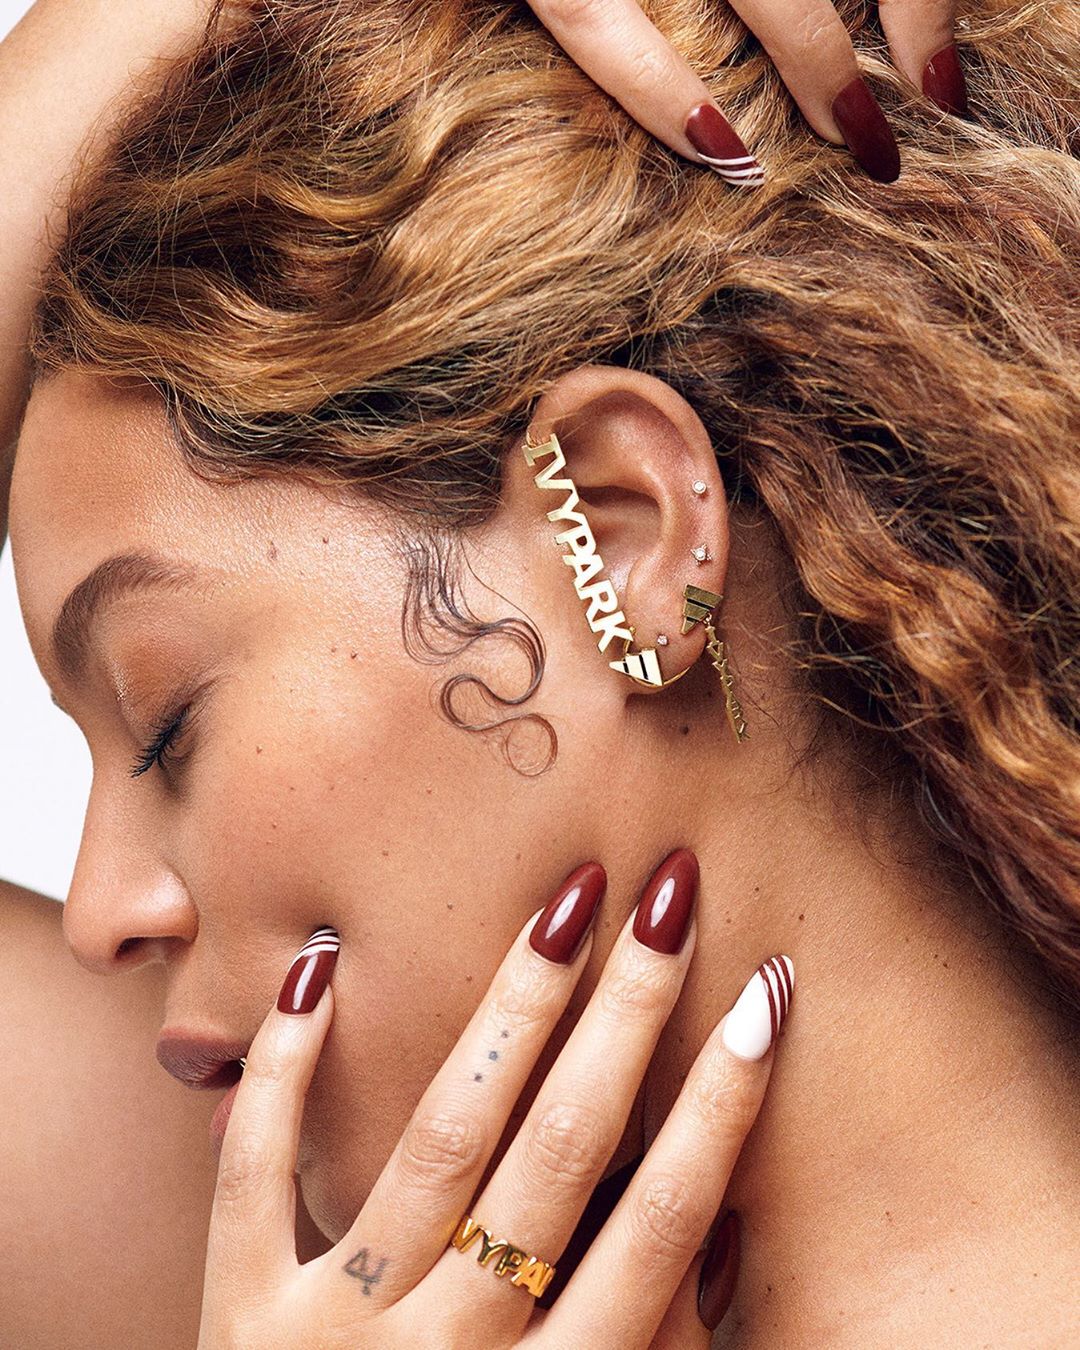 Bí quyết dưỡng da của Beyoncé là chú trọng bước tẩy trang trước khi đi ngủ. Ảnh: Instagram Beyoncé.